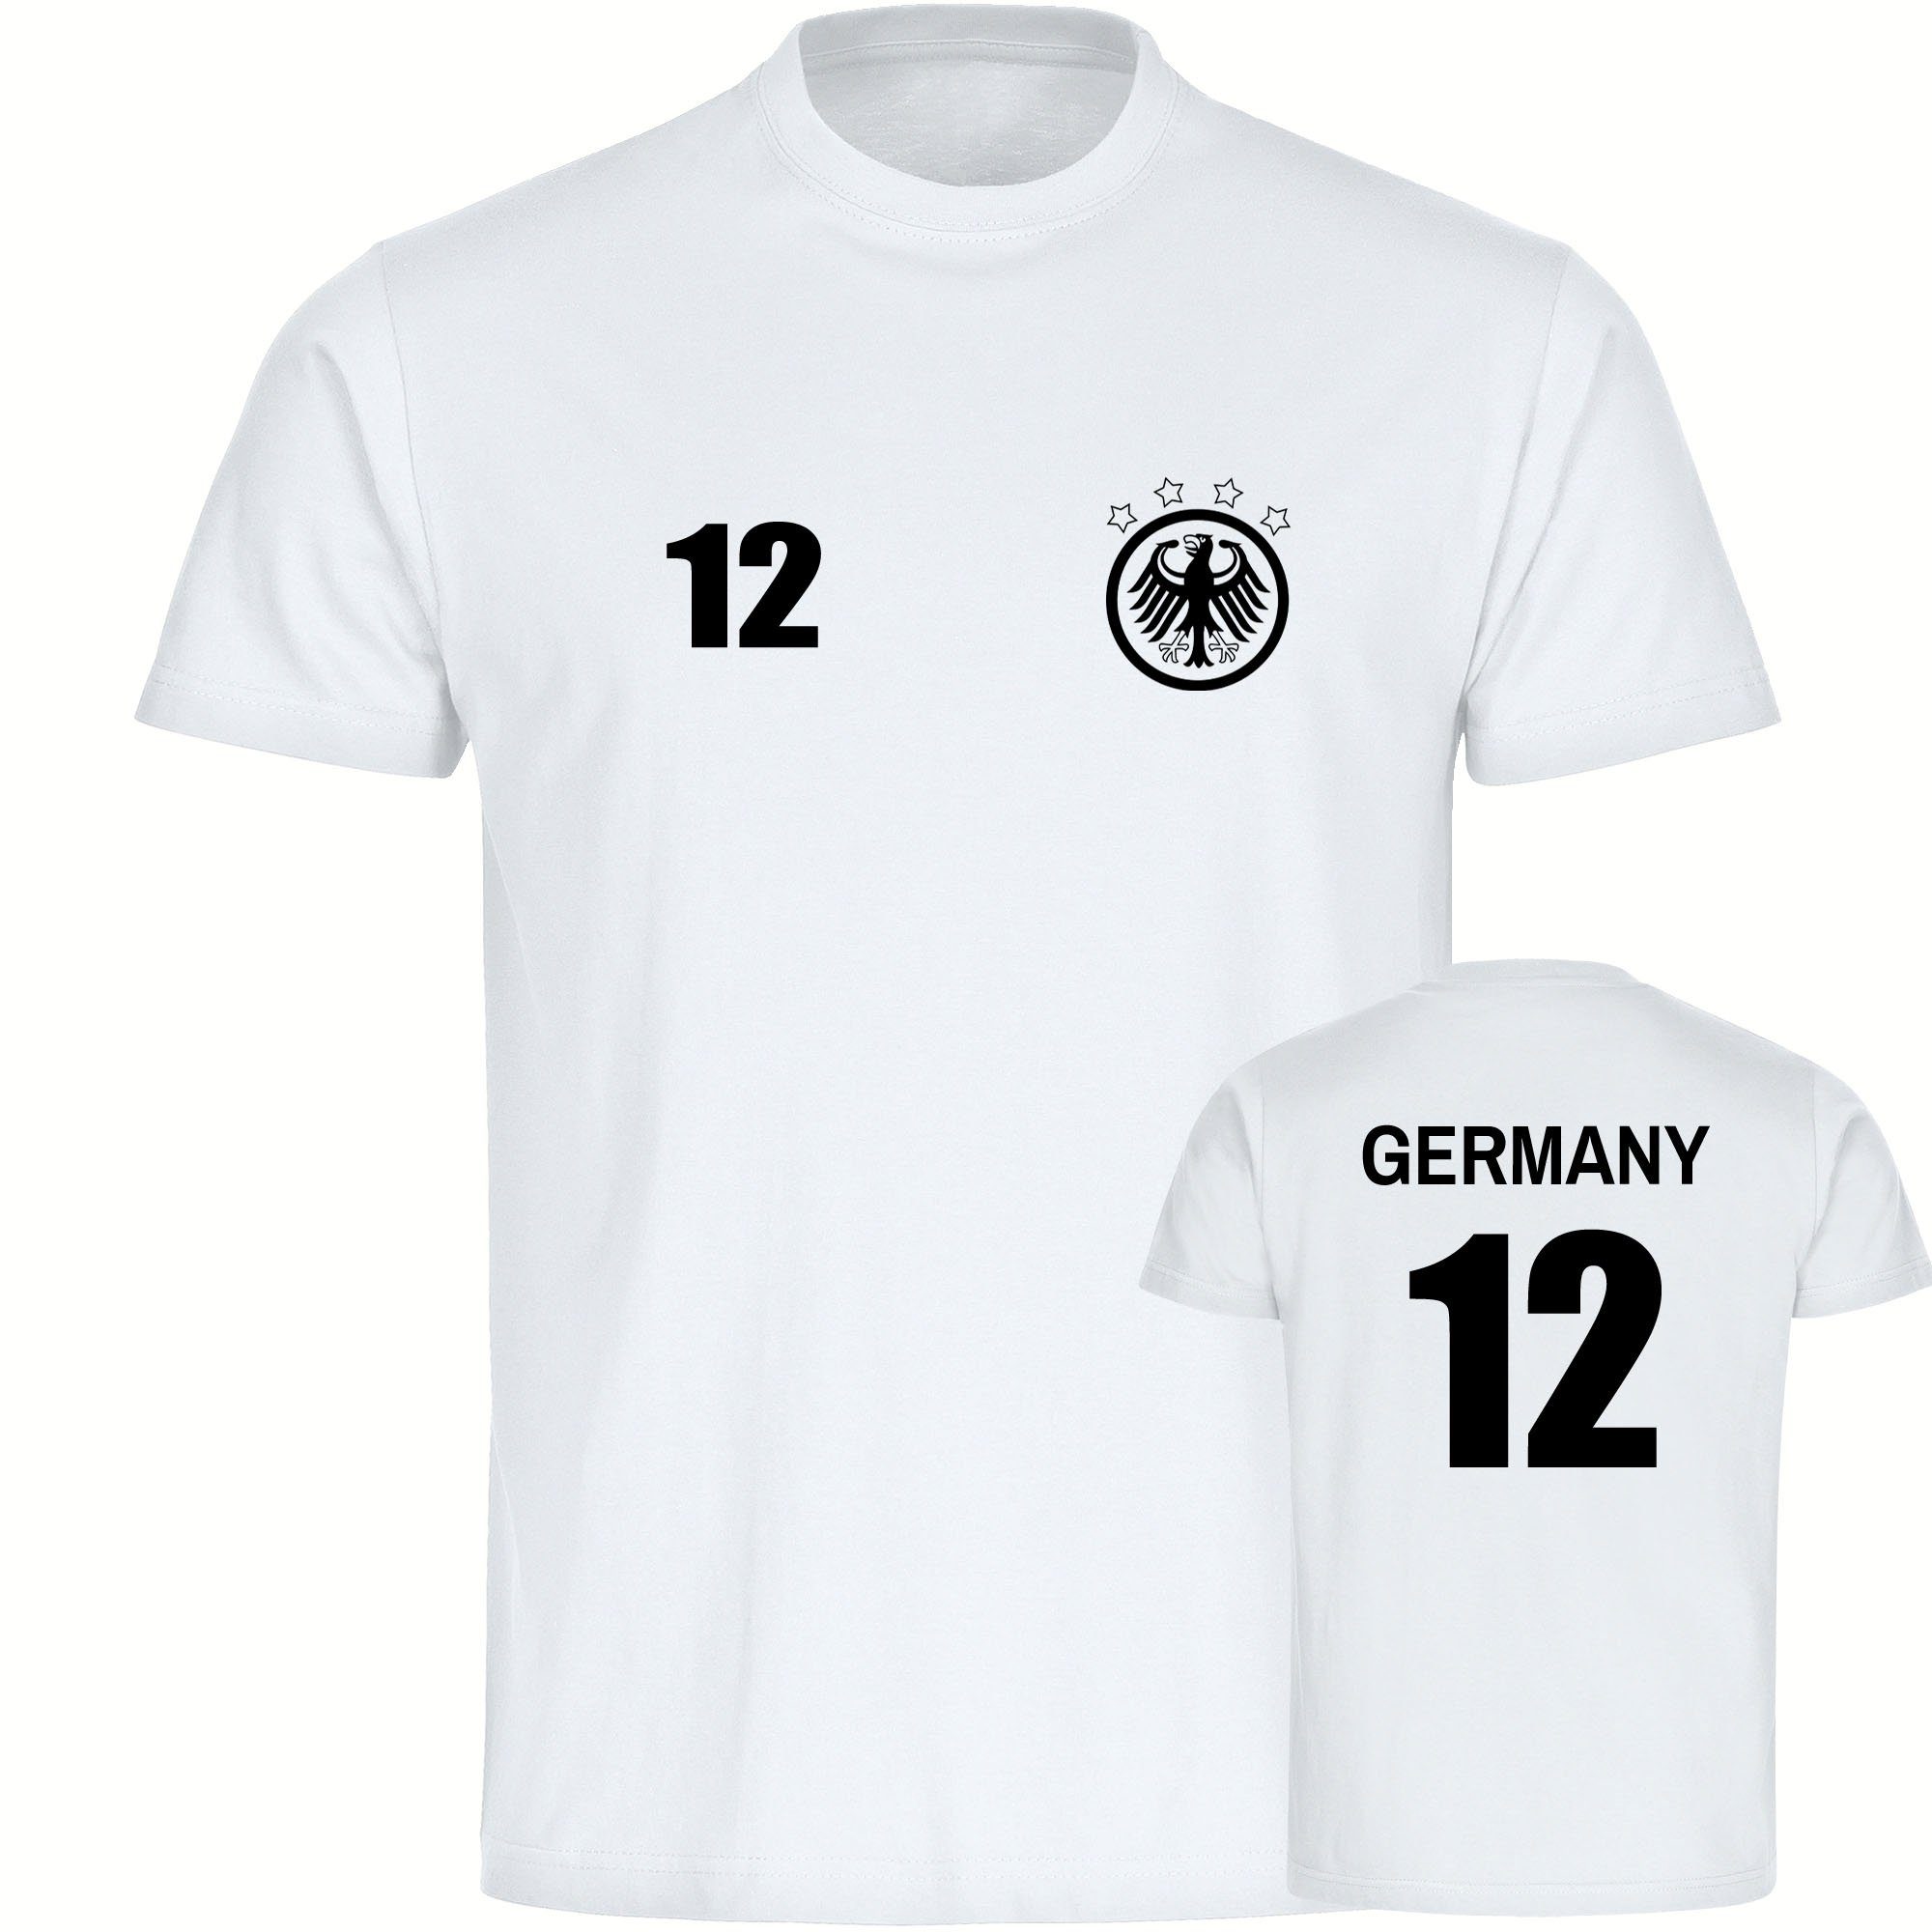 multifanshop T-Shirt Herren Germany - Adler Retro Trikot 12 - Männer